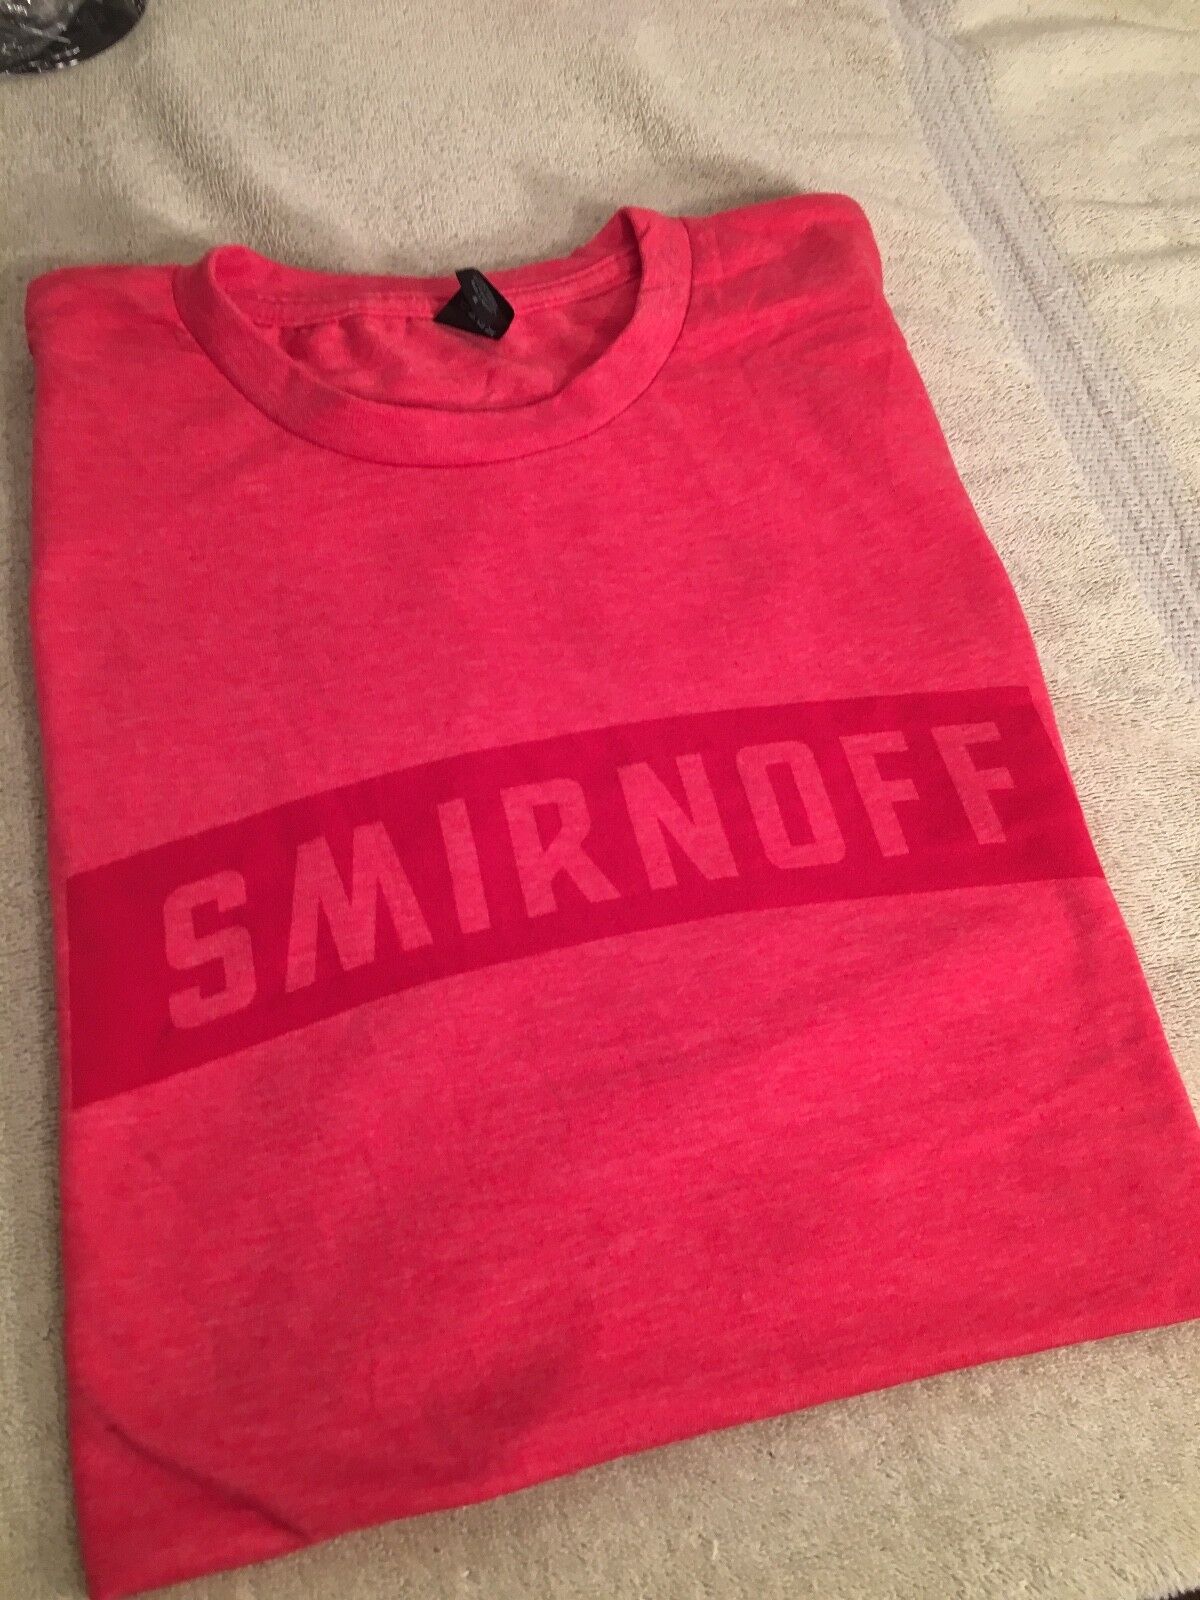 Smirnoff short sleeve shirt size XL Smirnoff - фотография #3